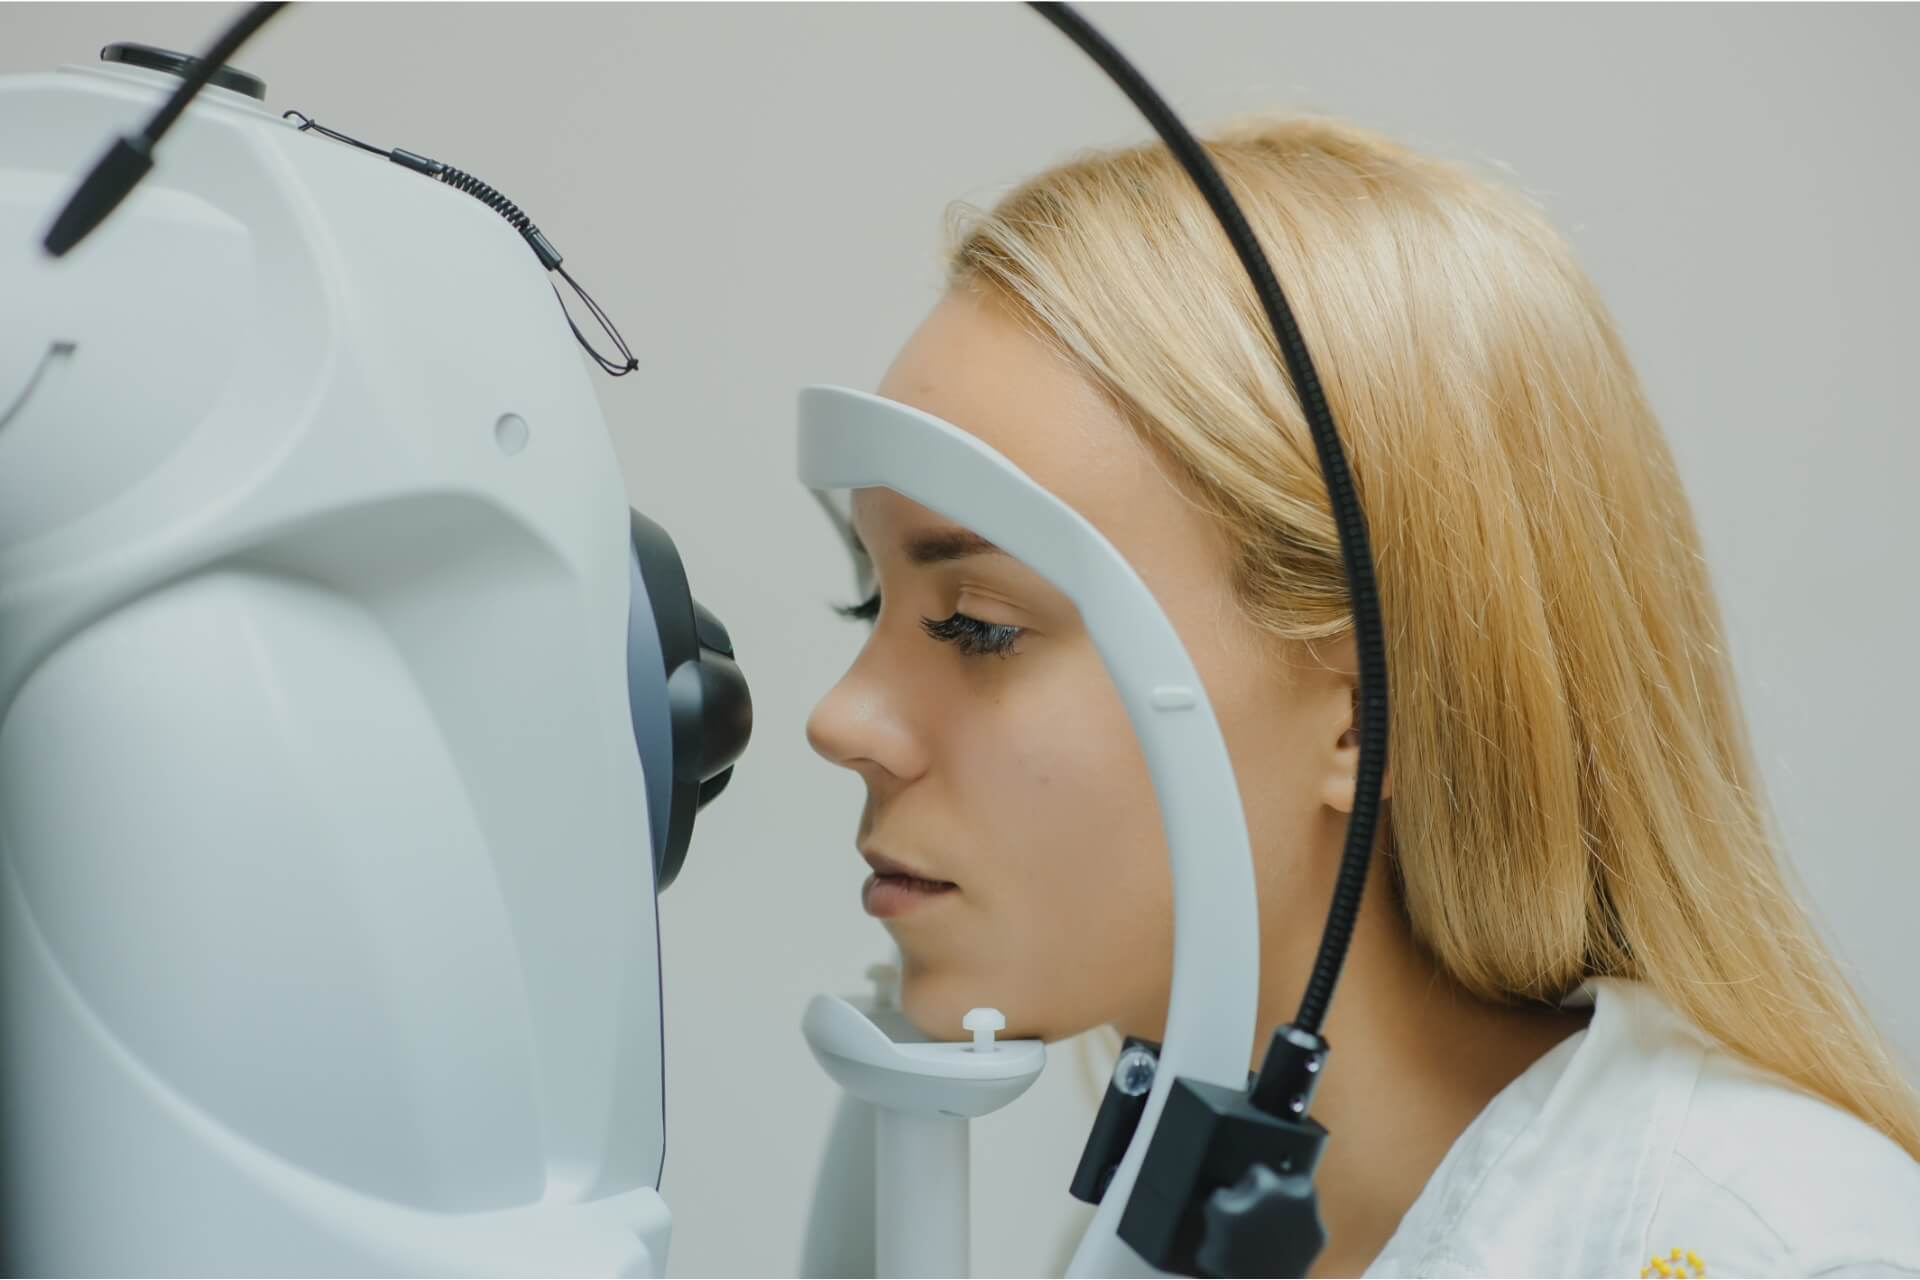 La tomografia ottica per la diagnosi delle patologie oculari